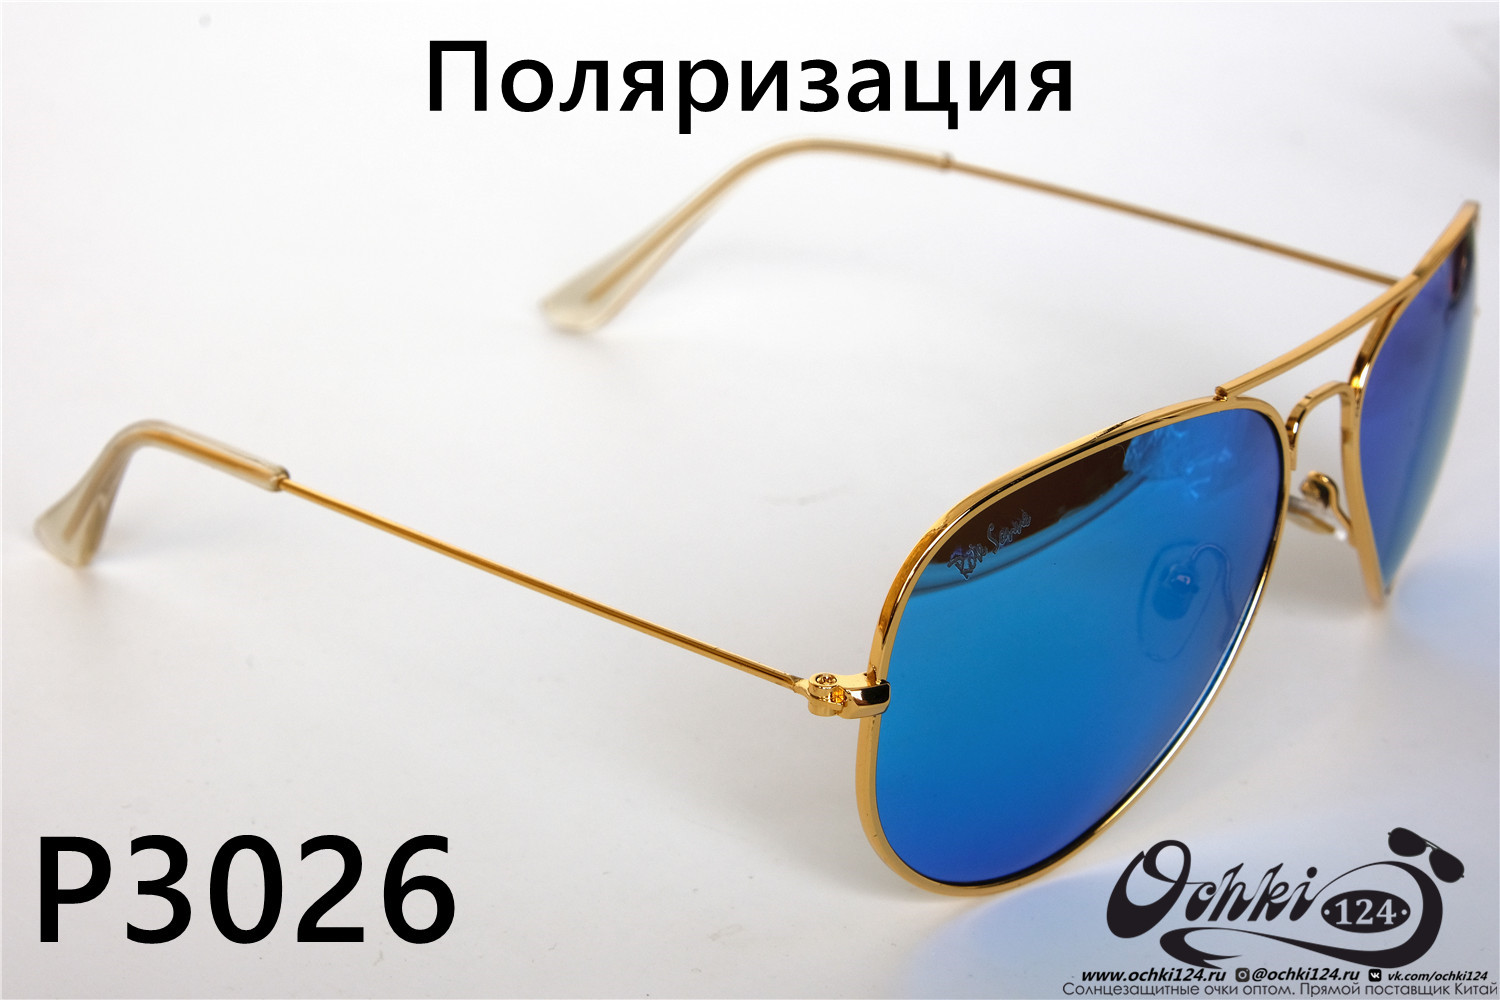  Солнцезащитные очки картинка 2022 Унисекс Поляризованные Авиаторы Rote Sonne P3026-8 